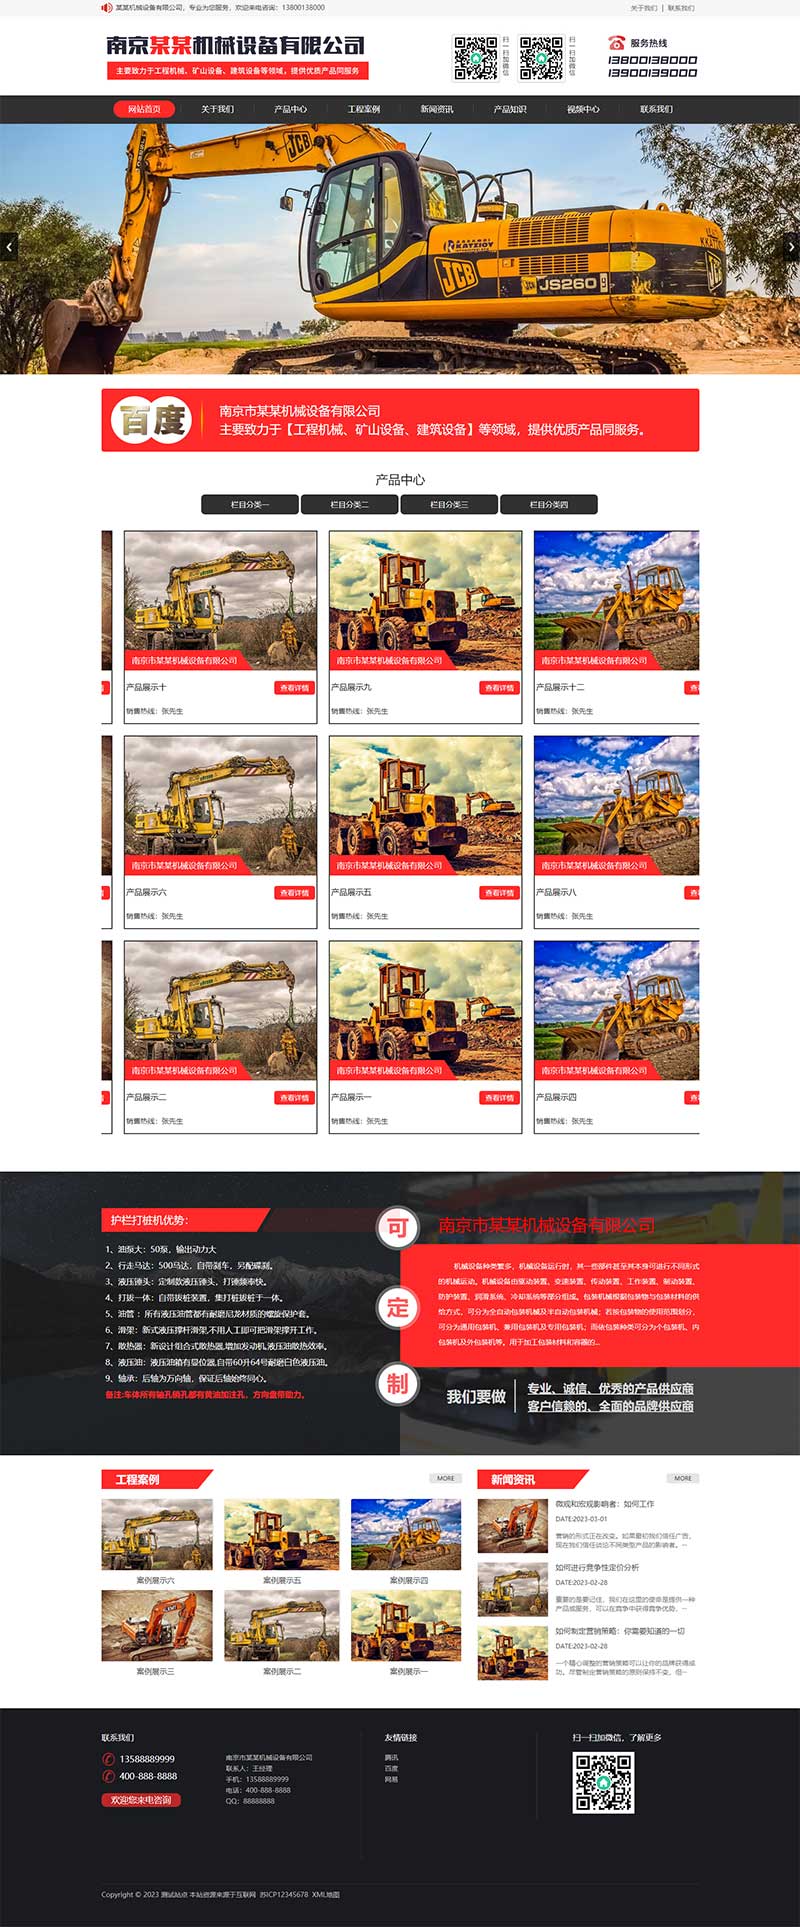 红色大气的机械设备网站模板 重工工业设备网站源码下载